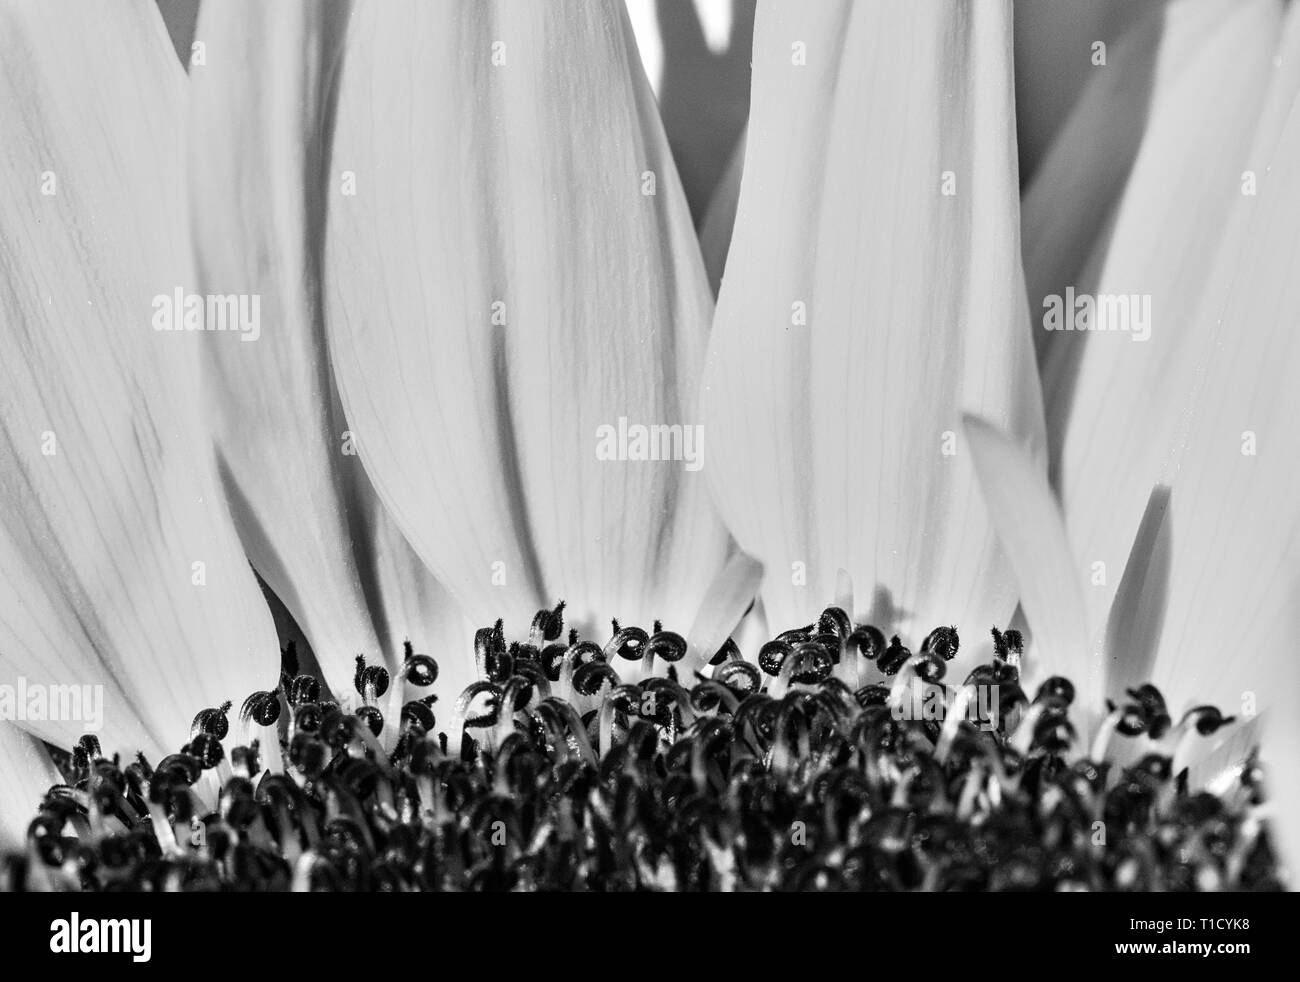 Makroaufnahme einer Gerbera Daisy, vertikale Blütenblätter als Kulisse für die dunklen Antheren Stockfoto